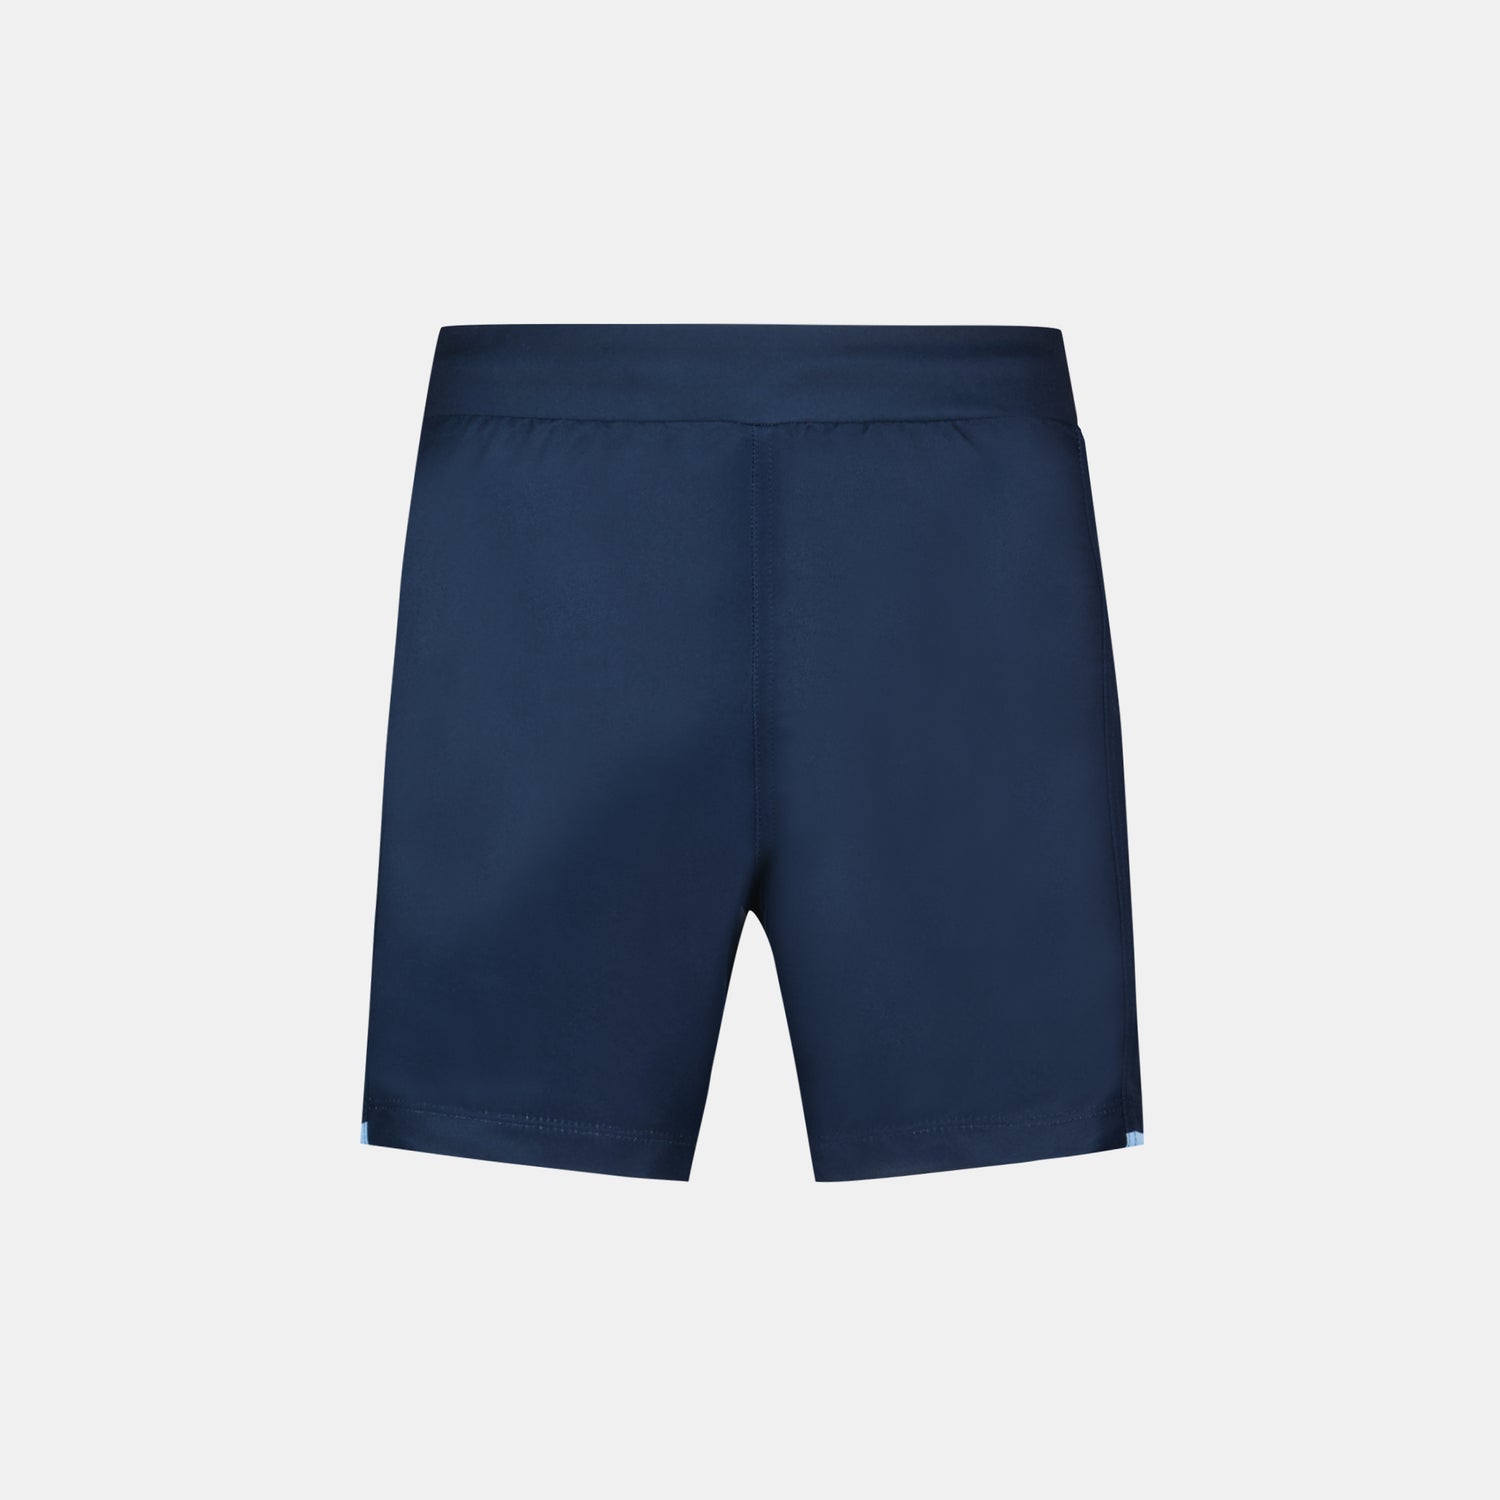 2320334-AB REPLICA Short Enfant blue navy  | Pantalones Cortos para Niño